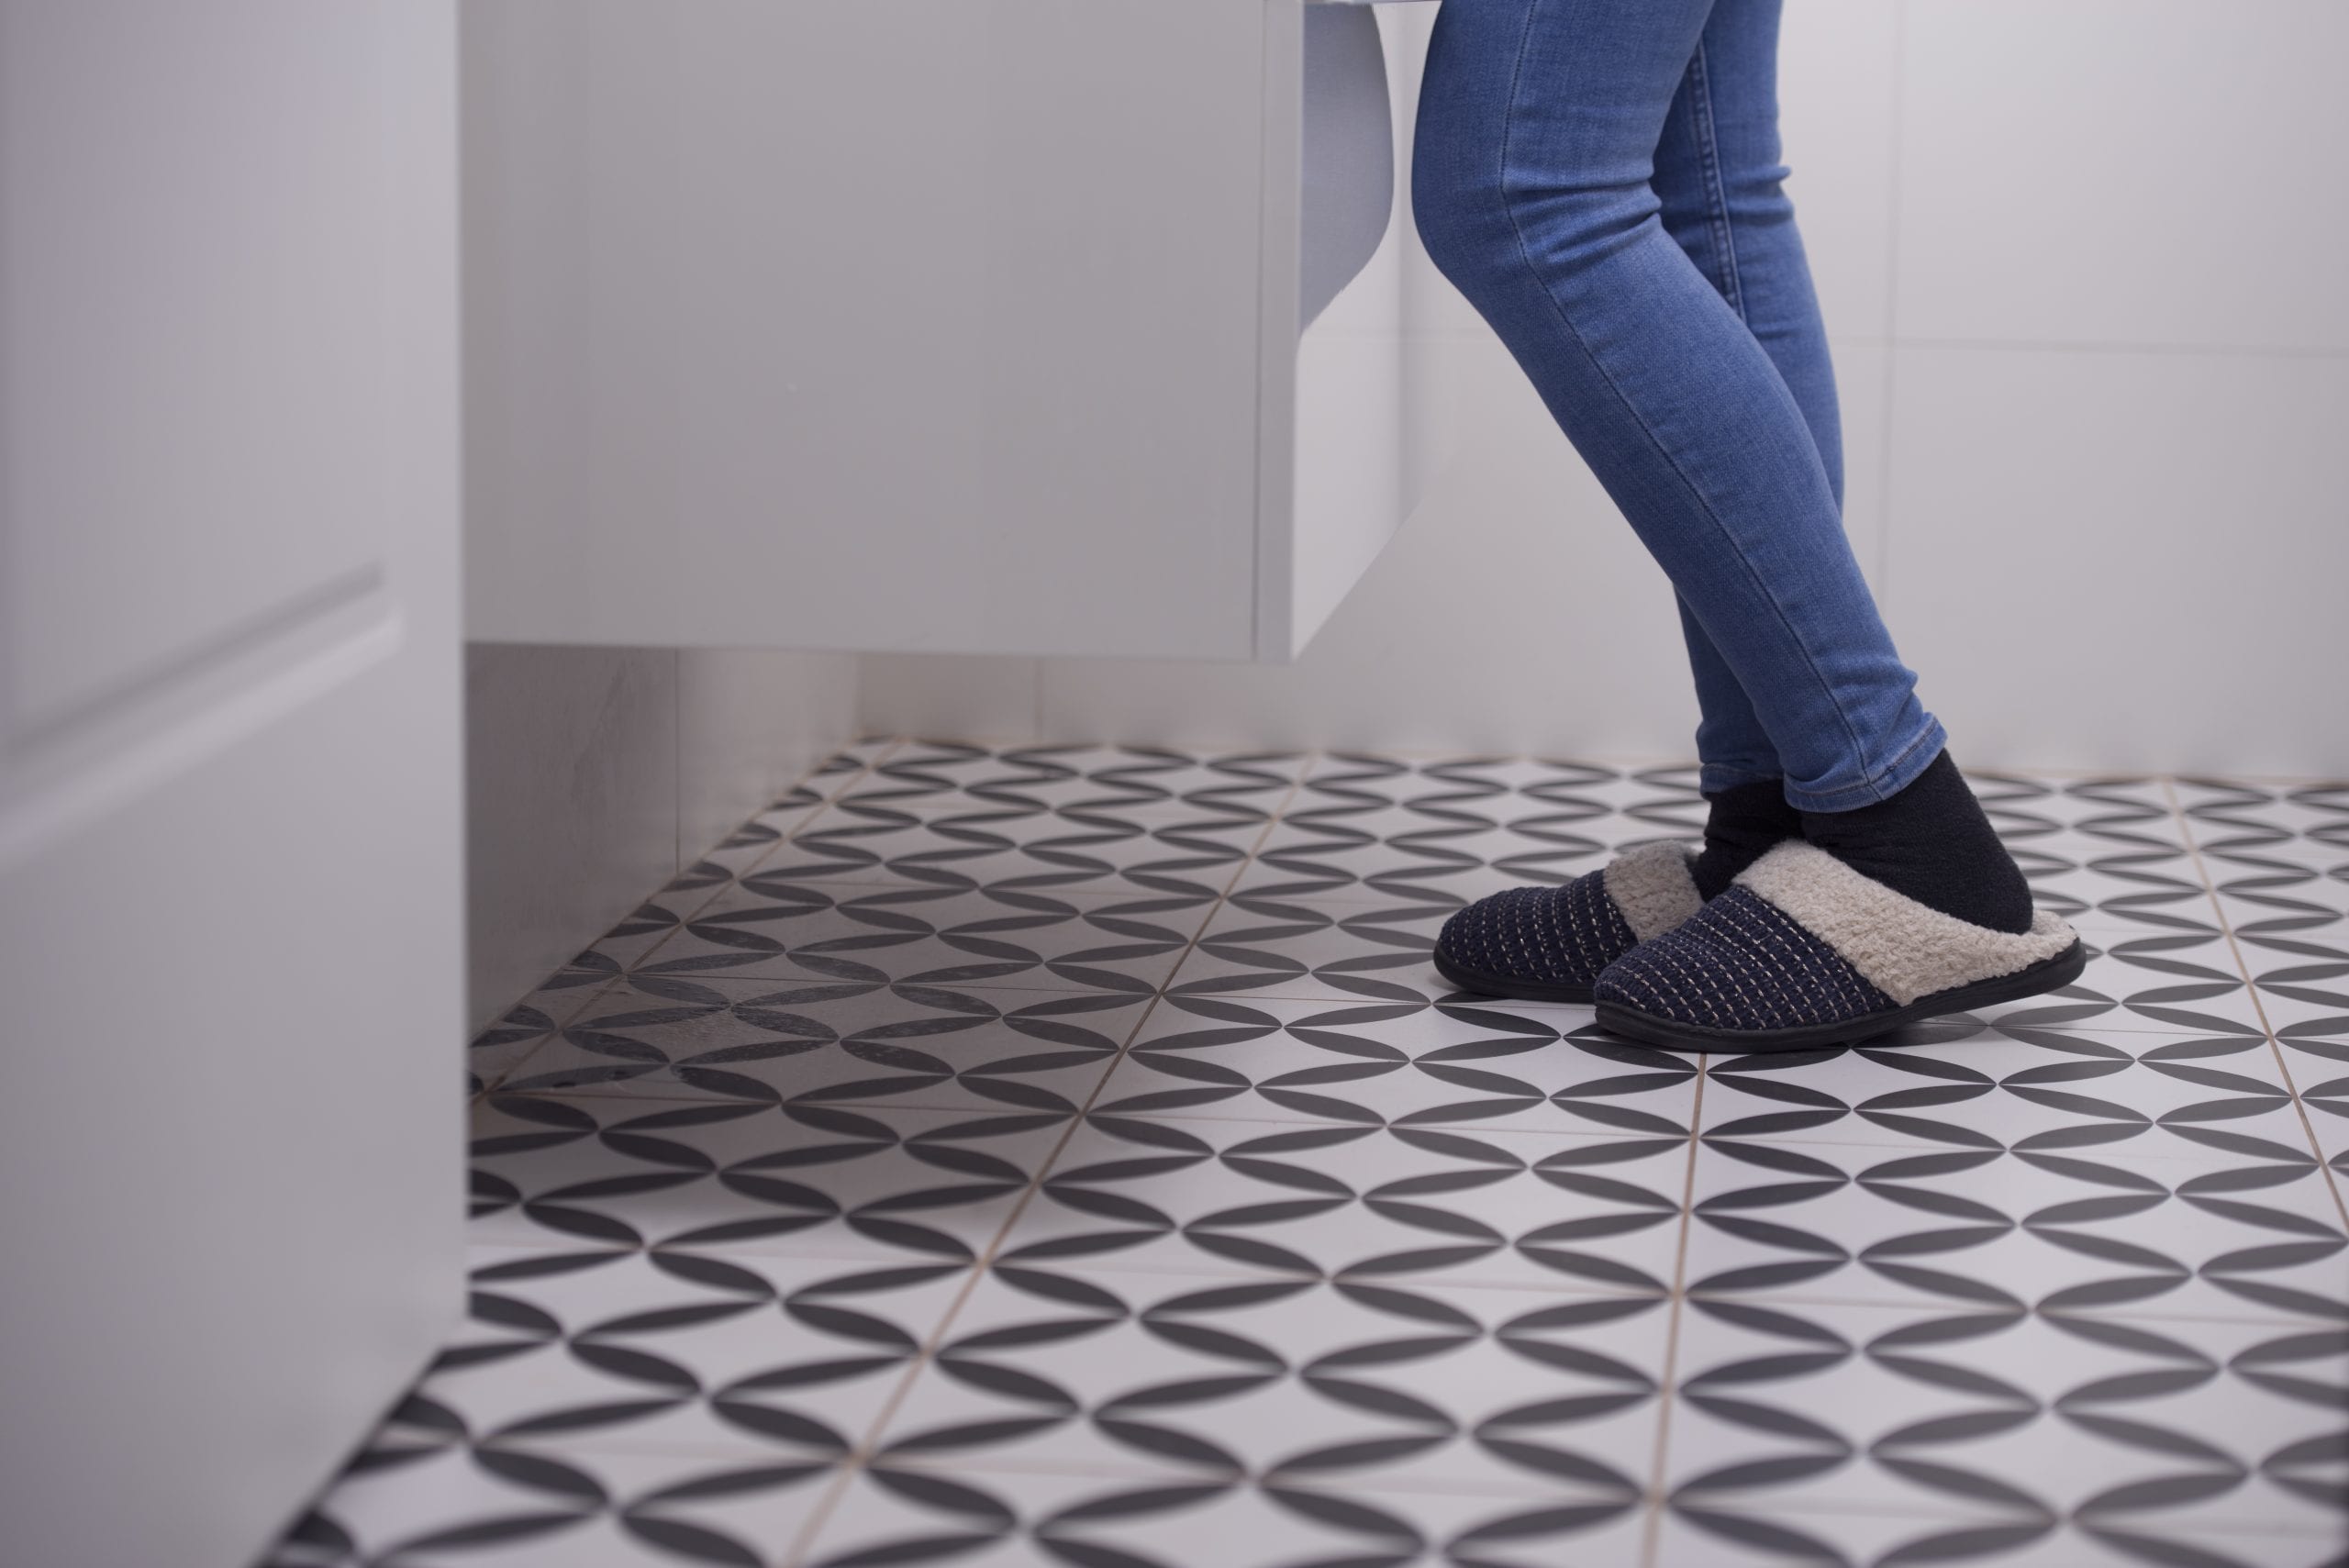 Non Slip Flooring For Your Bathroom, Best Tile For Bathroom Floor Non Slip